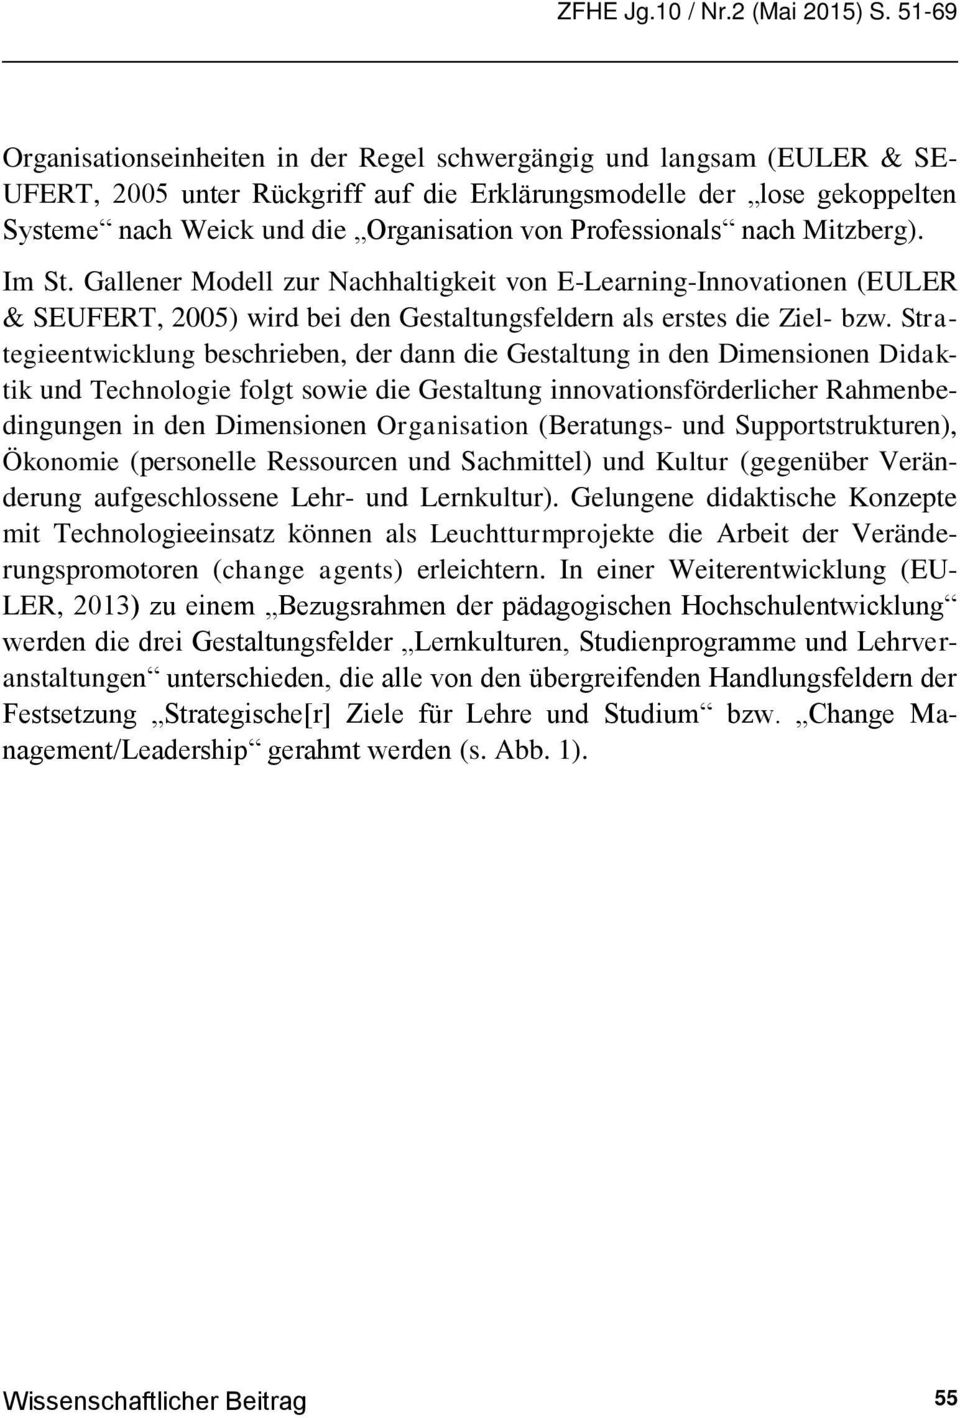 Professionals nach Mitzberg). Im St. Gallener Modell zur Nachhaltigkeit von E-Learning-Innovationen (EULER & SEUFERT, 2005) wird bei den Gestaltungsfeldern als erstes die Ziel- bzw.